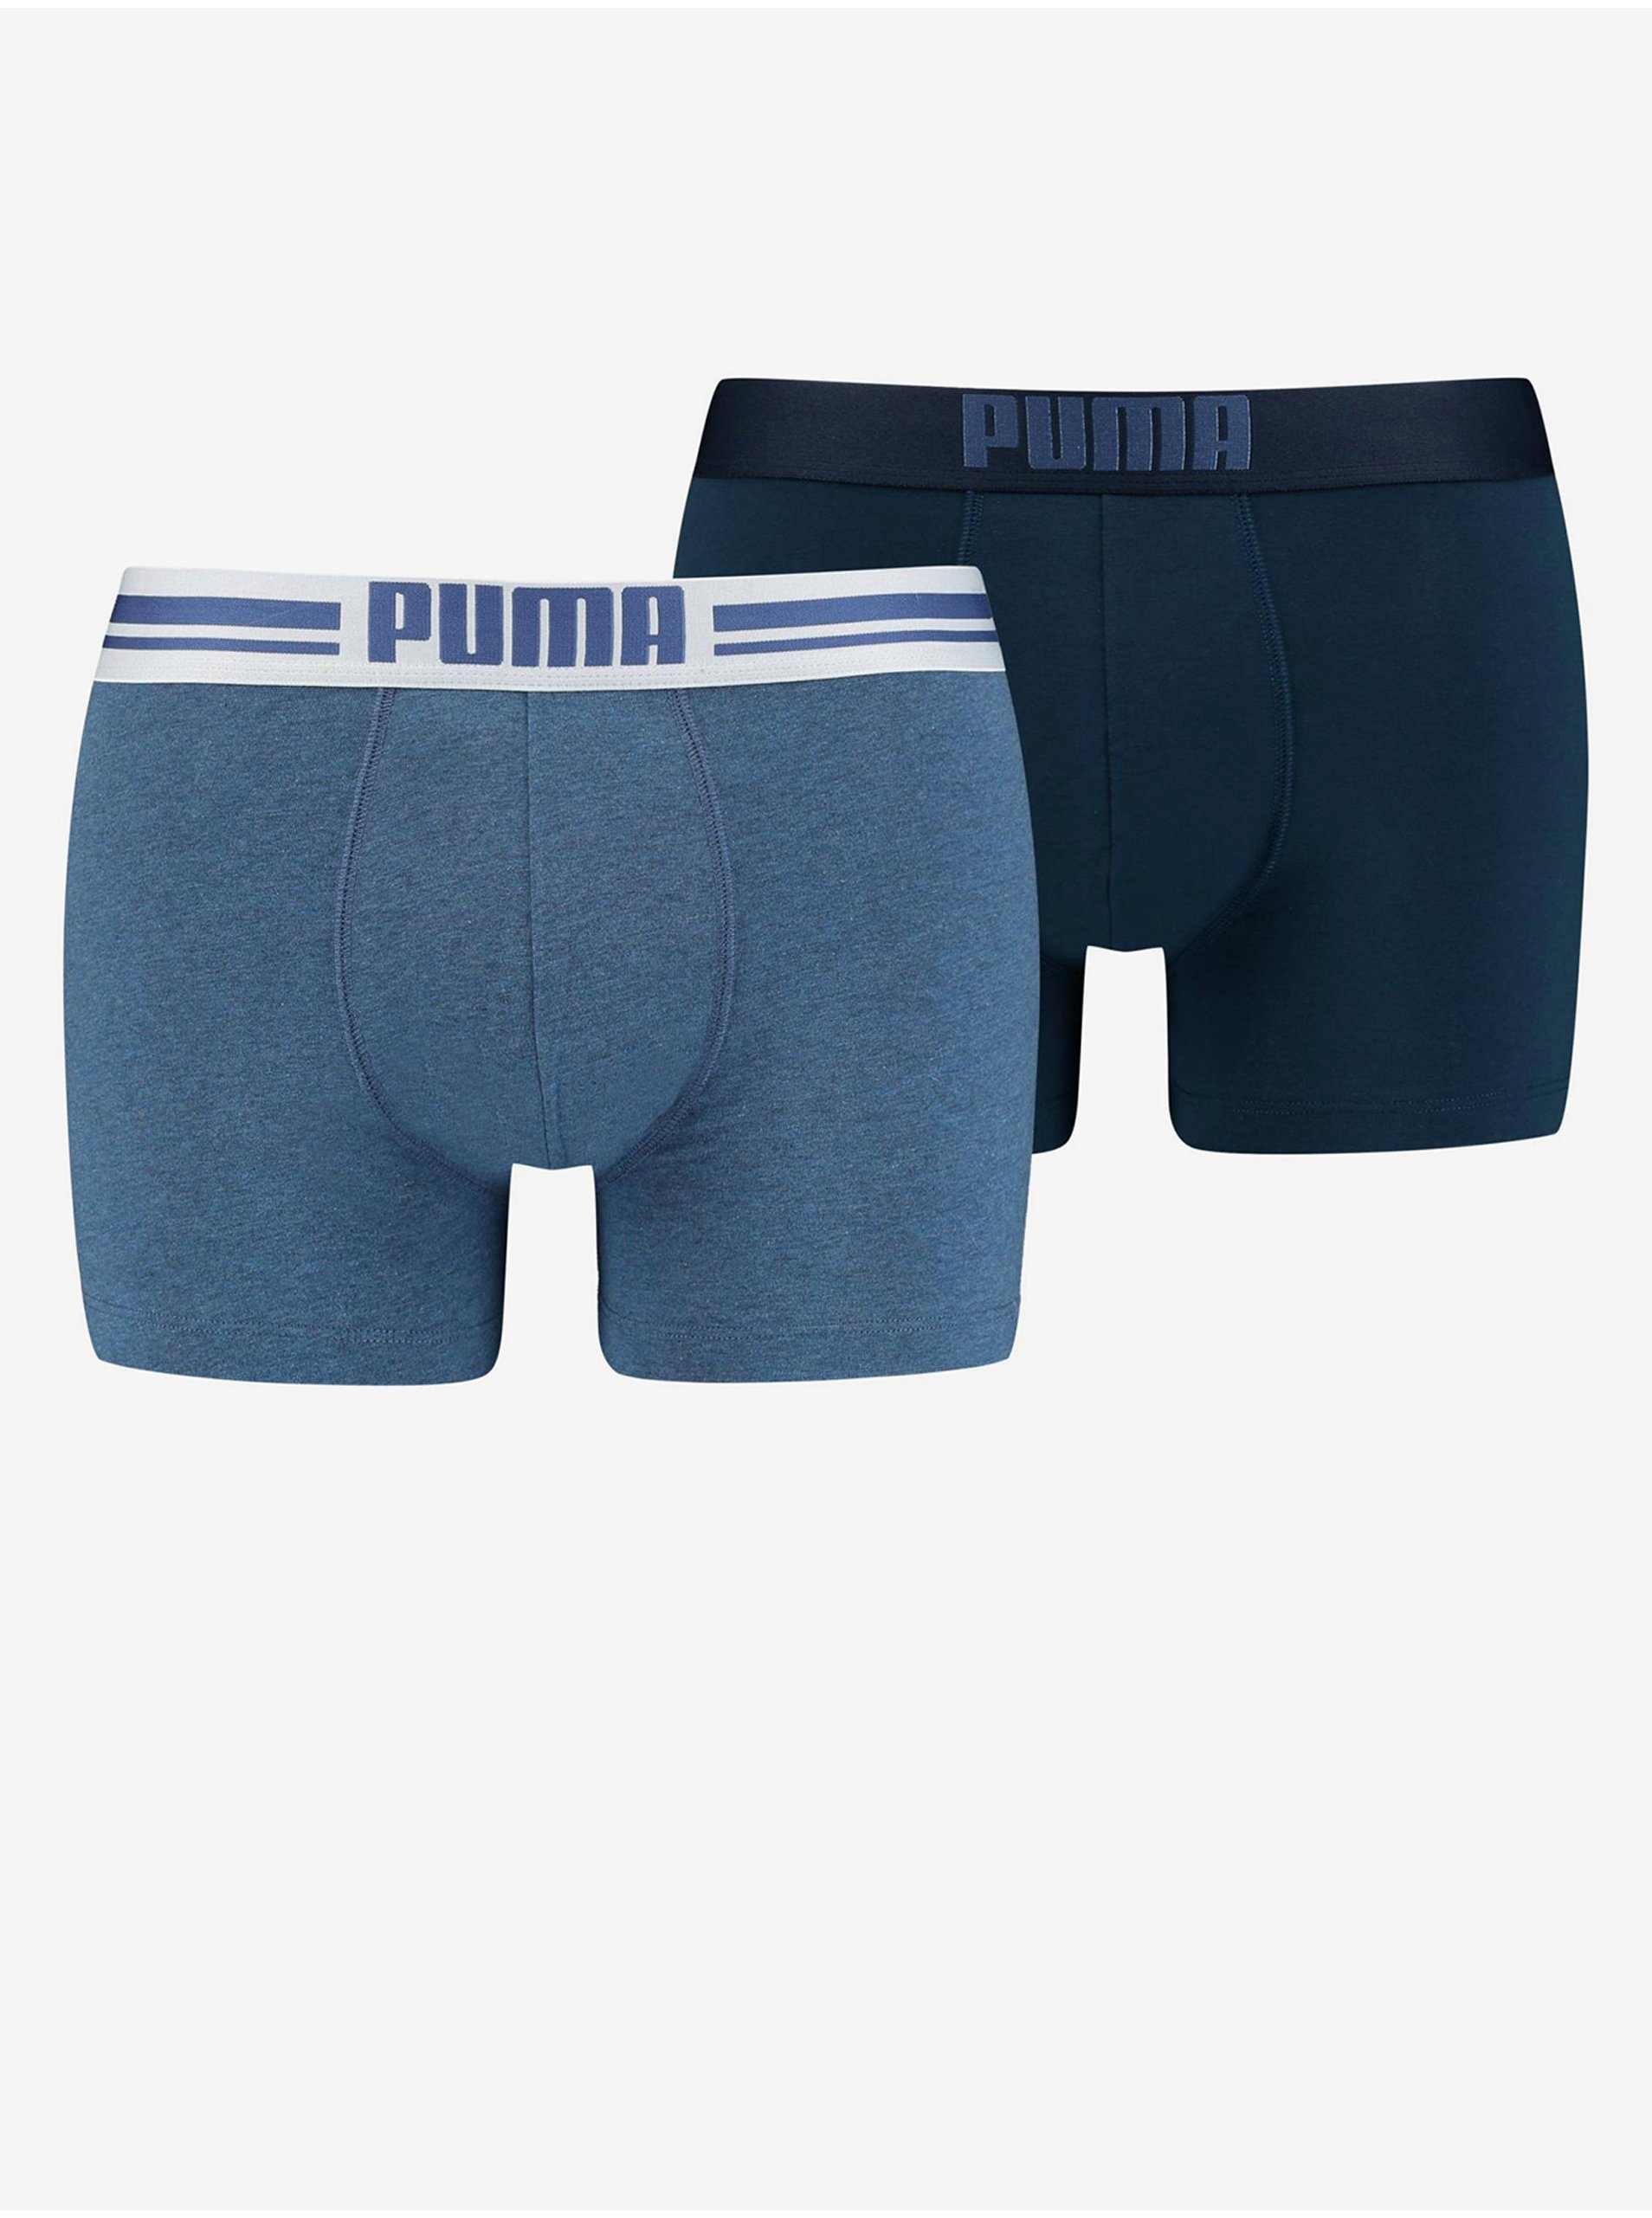 Levně Sada dvou pánských boxerek v tmavě modré a modré barvě Puma